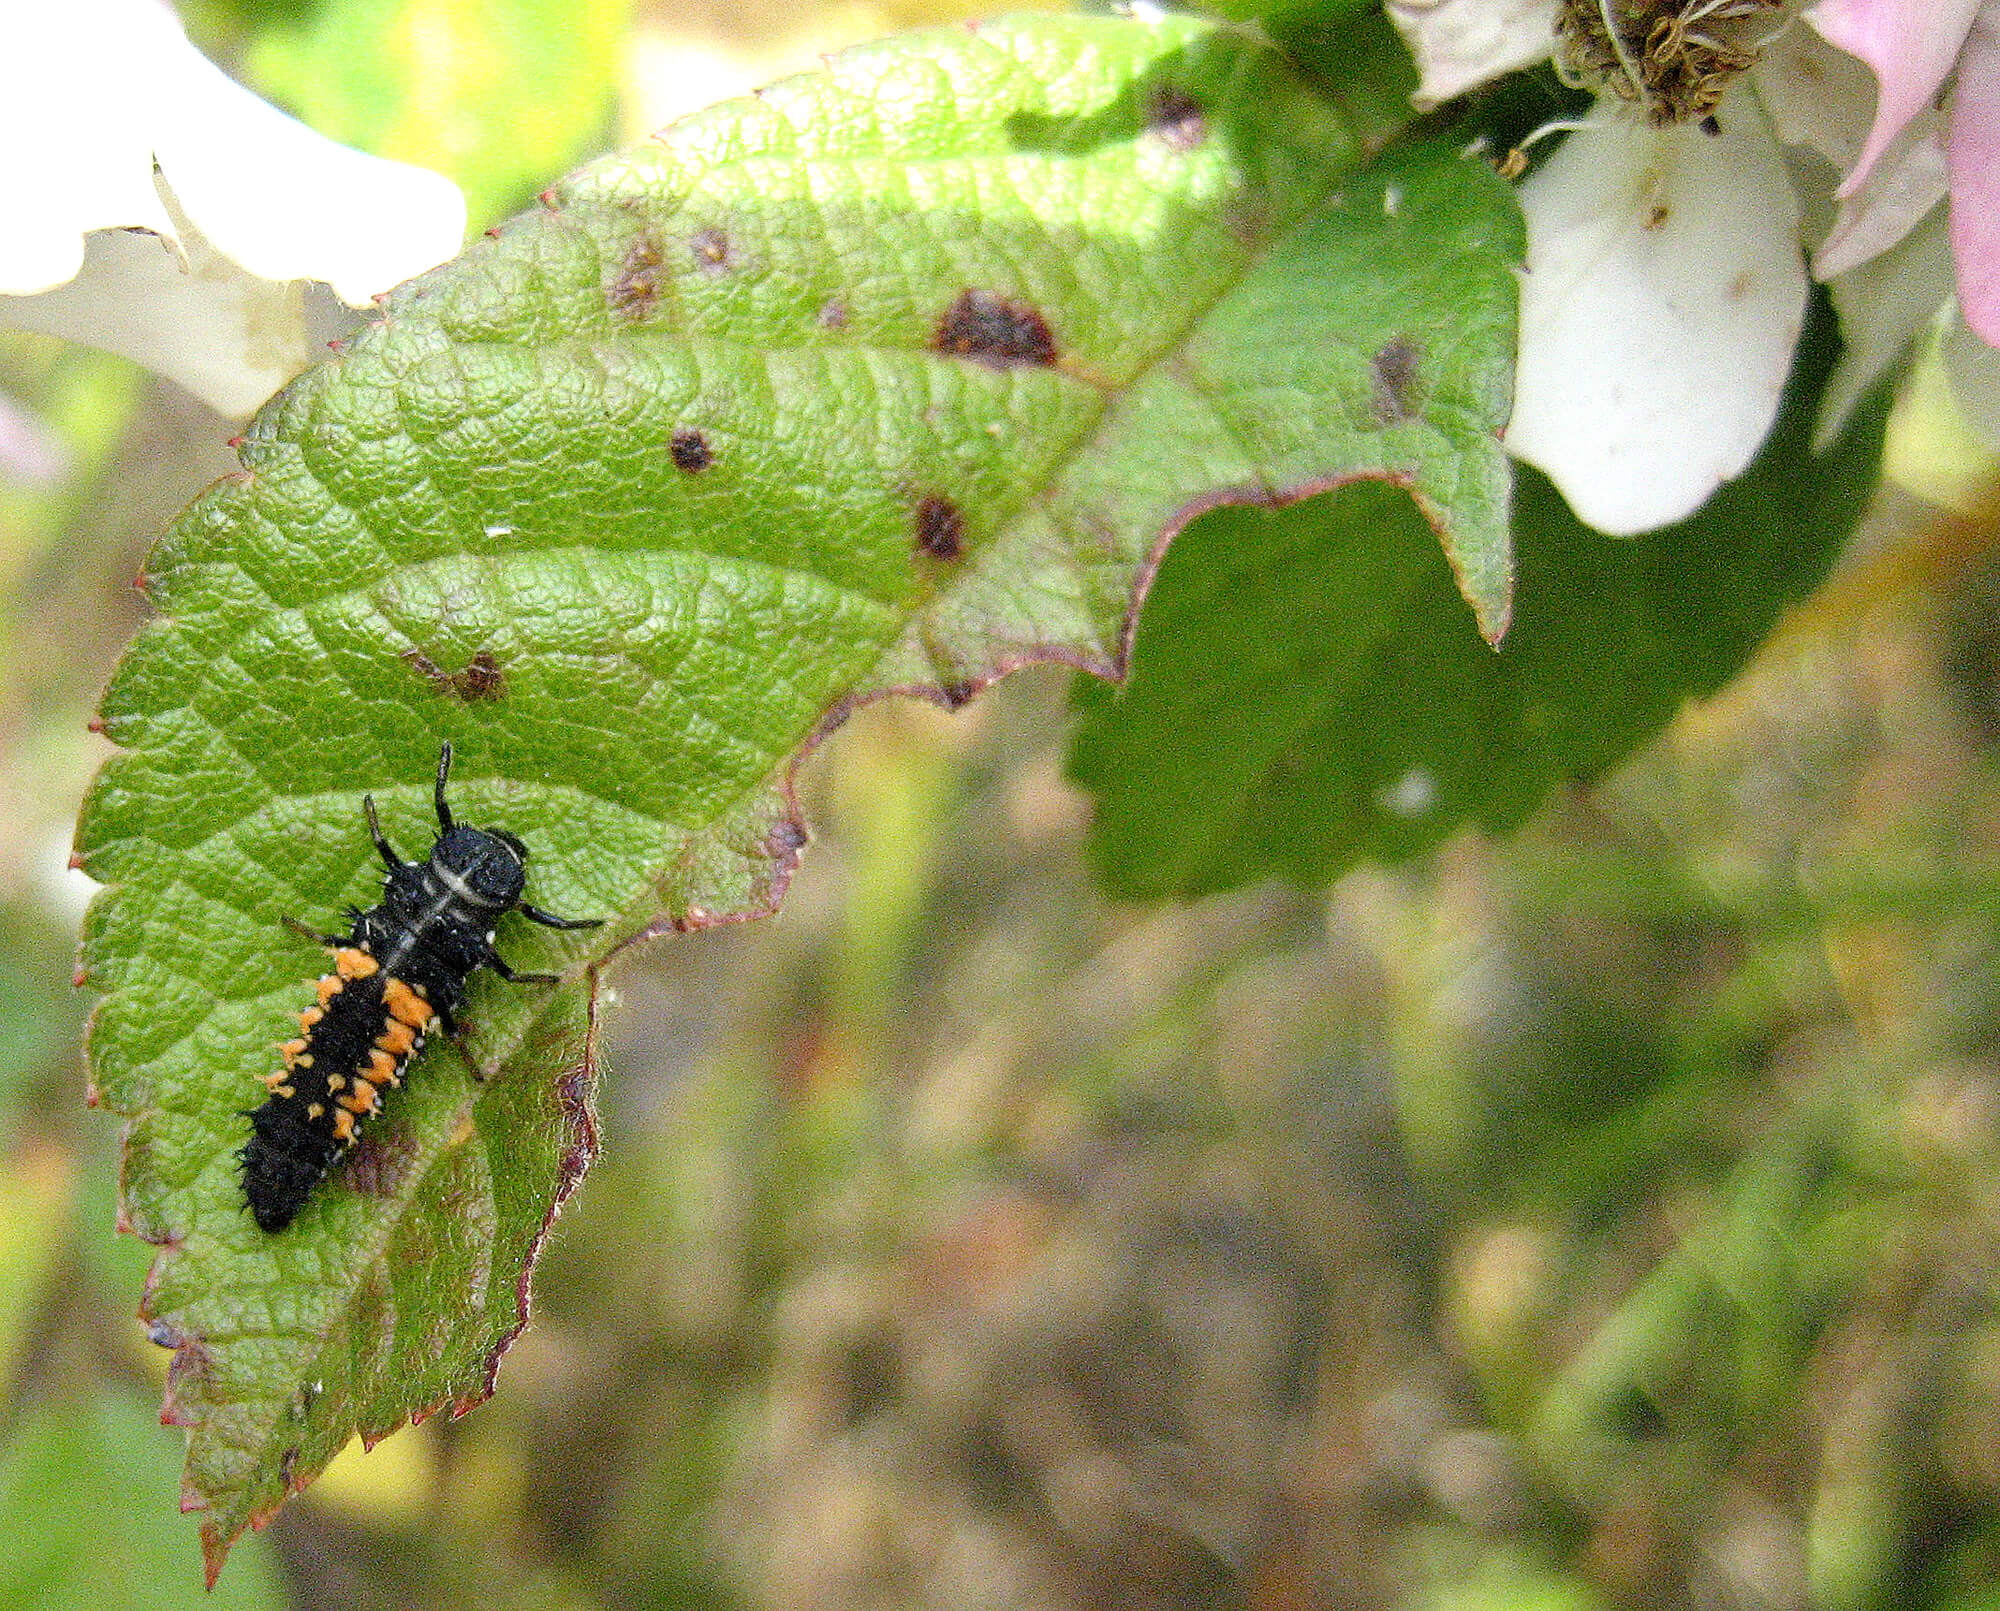 ladybug larvae - photo by Helen Krayenhoff